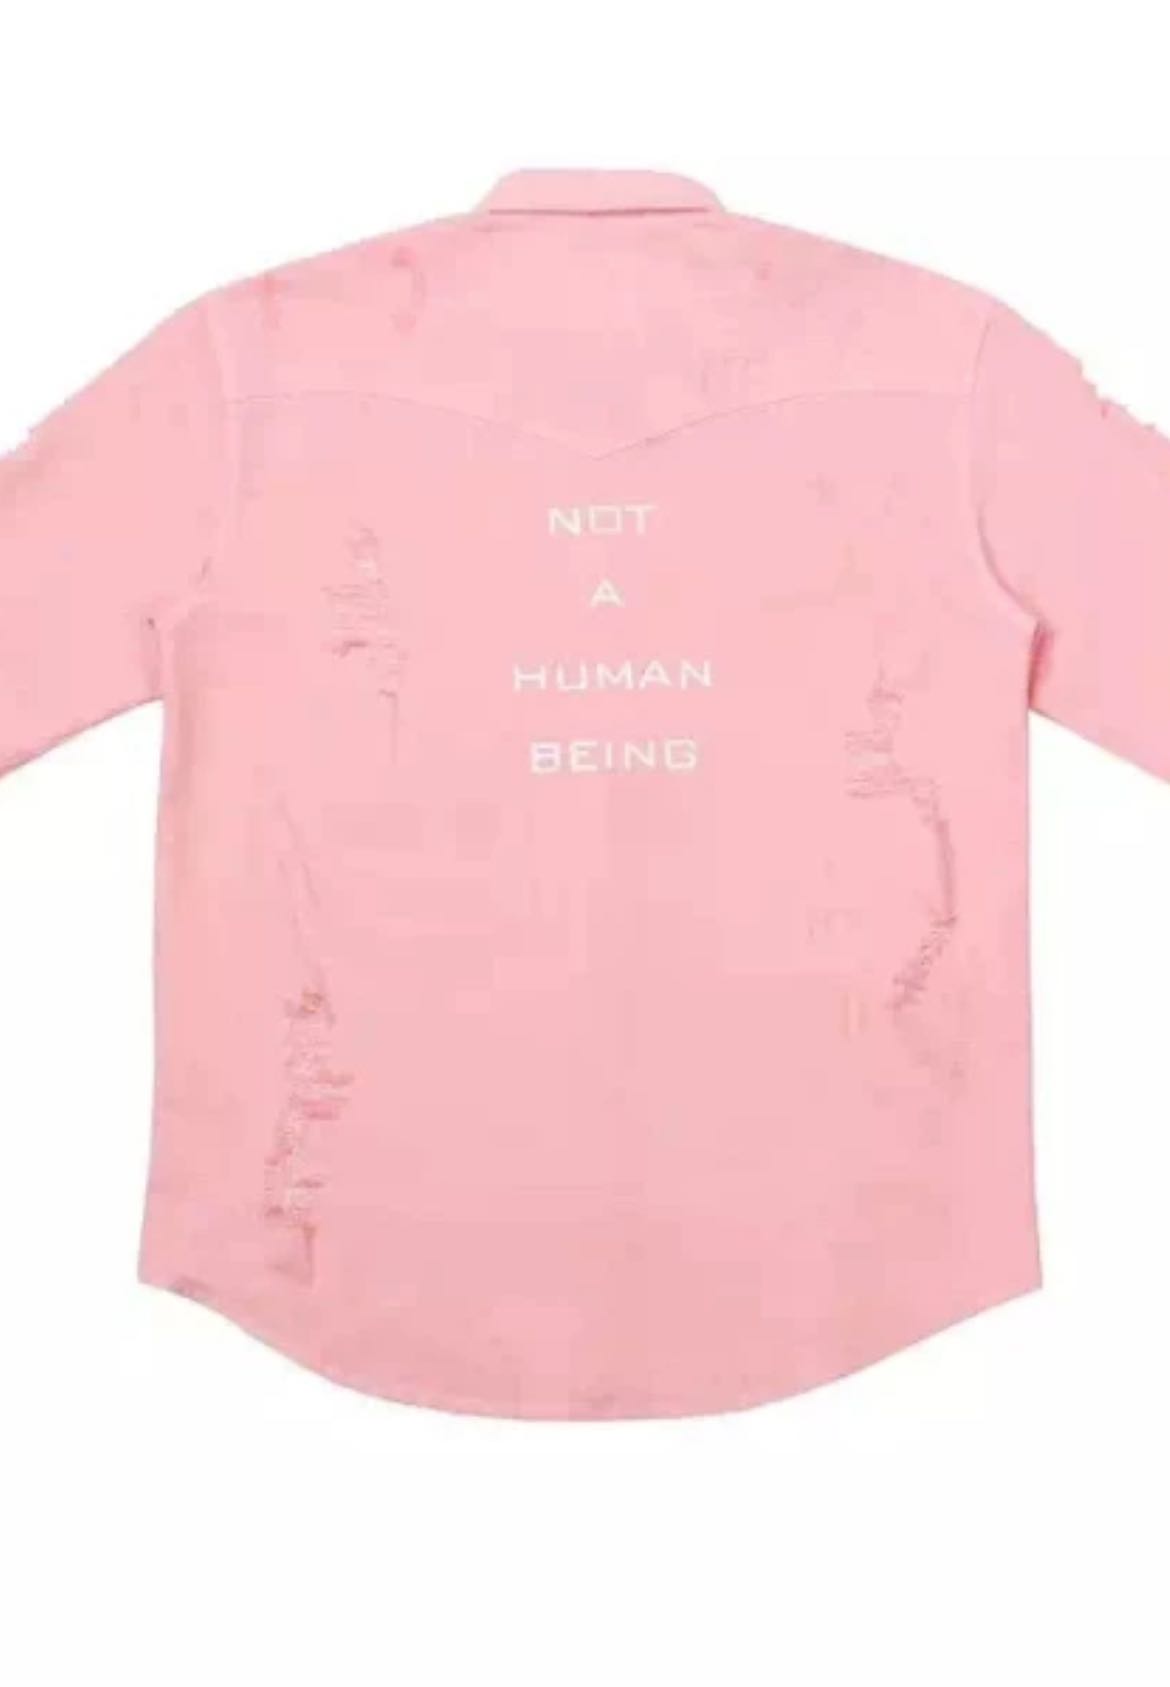 LA 15SS "MARSHMALLOW" Pink Distressed Shirt size M - 2